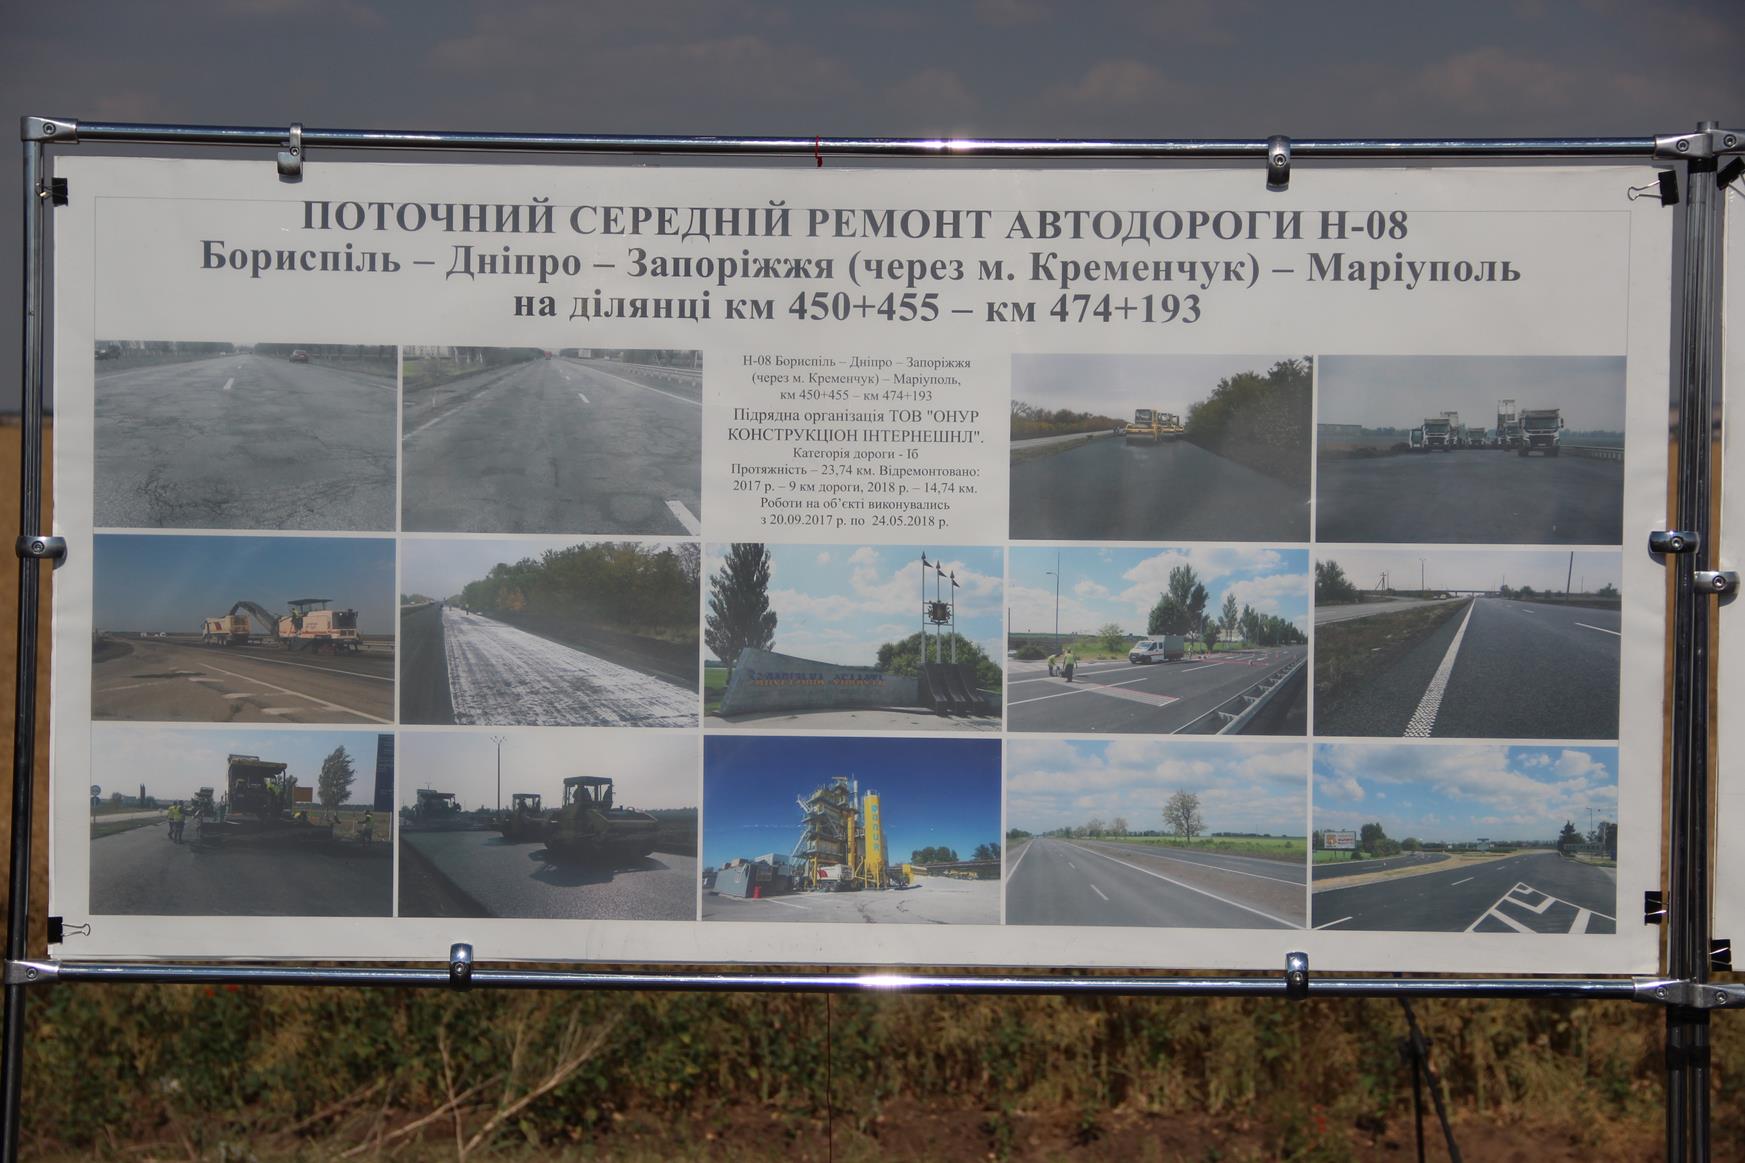 Роботи на об'єкті були розпочаті в кінці вересня минулого року по правому проїзду, від межі Дніпропетровської та Запорізької областей в напрямку Запоріжжя